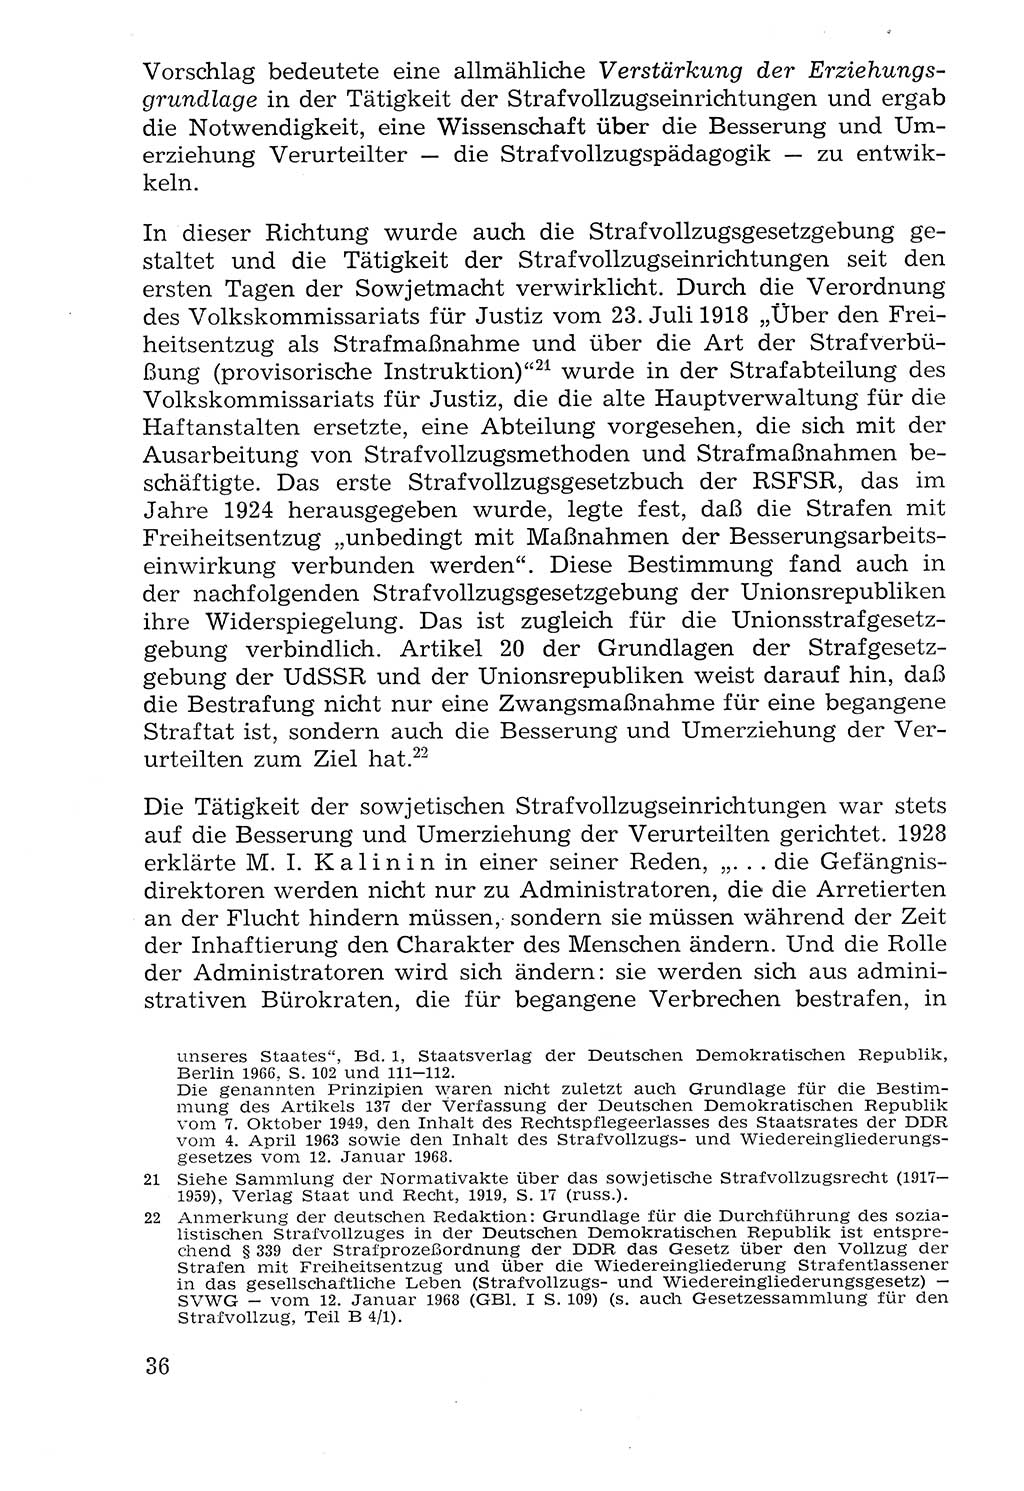 Lehrbuch der Strafvollzugspädagogik [Deutsche Demokratische Republik (DDR)] 1969, Seite 36 (Lb. SV-Pd. DDR 1969, S. 36)